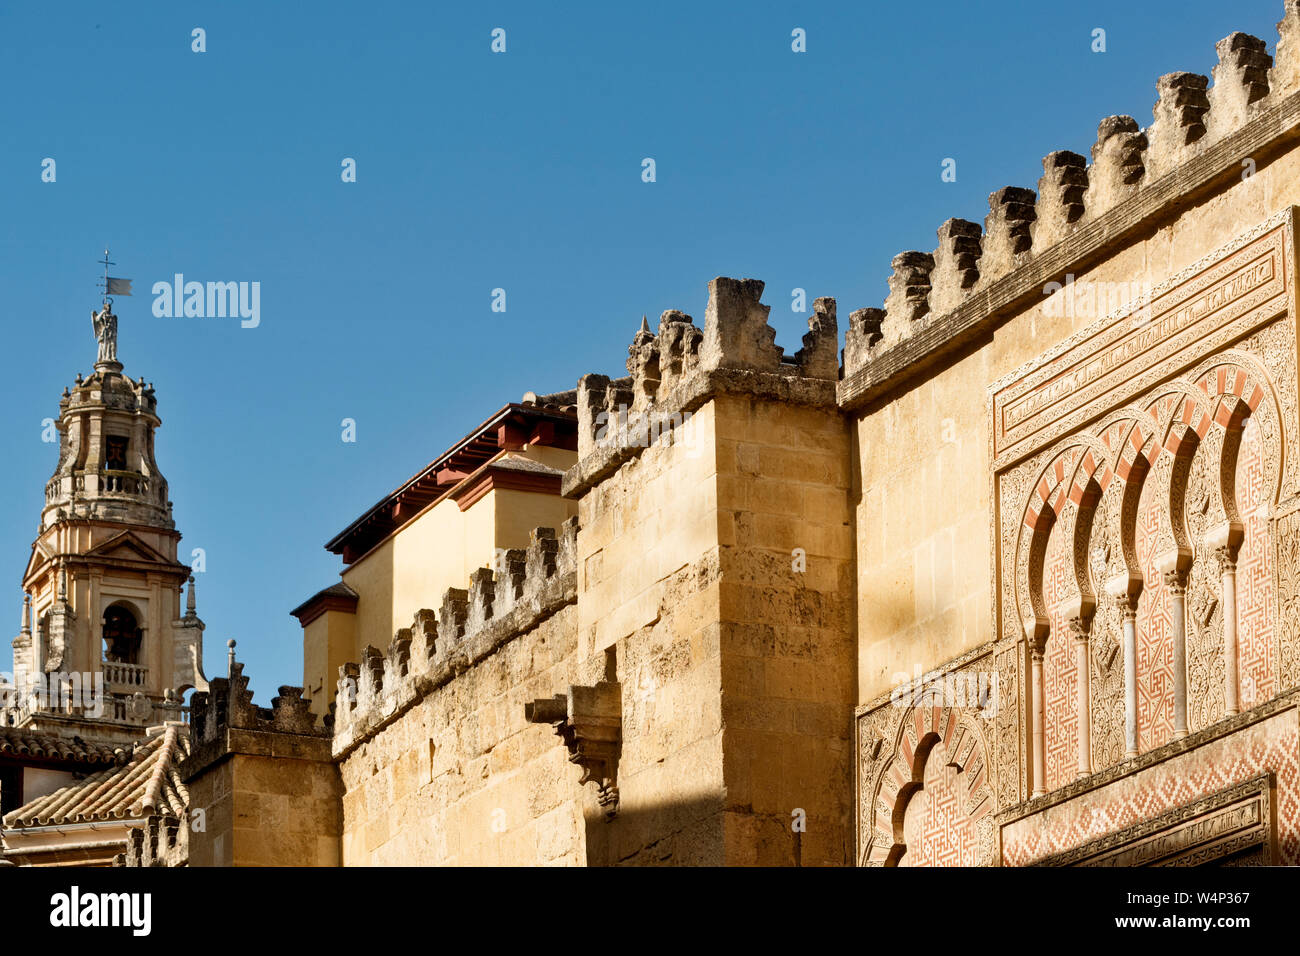 Da originale minareto musulmano per l attuale torre campanaria, questa struttura ha svolto un ruolo importante nell'immagine e il profilo di Cordoba, Spagna Foto Stock